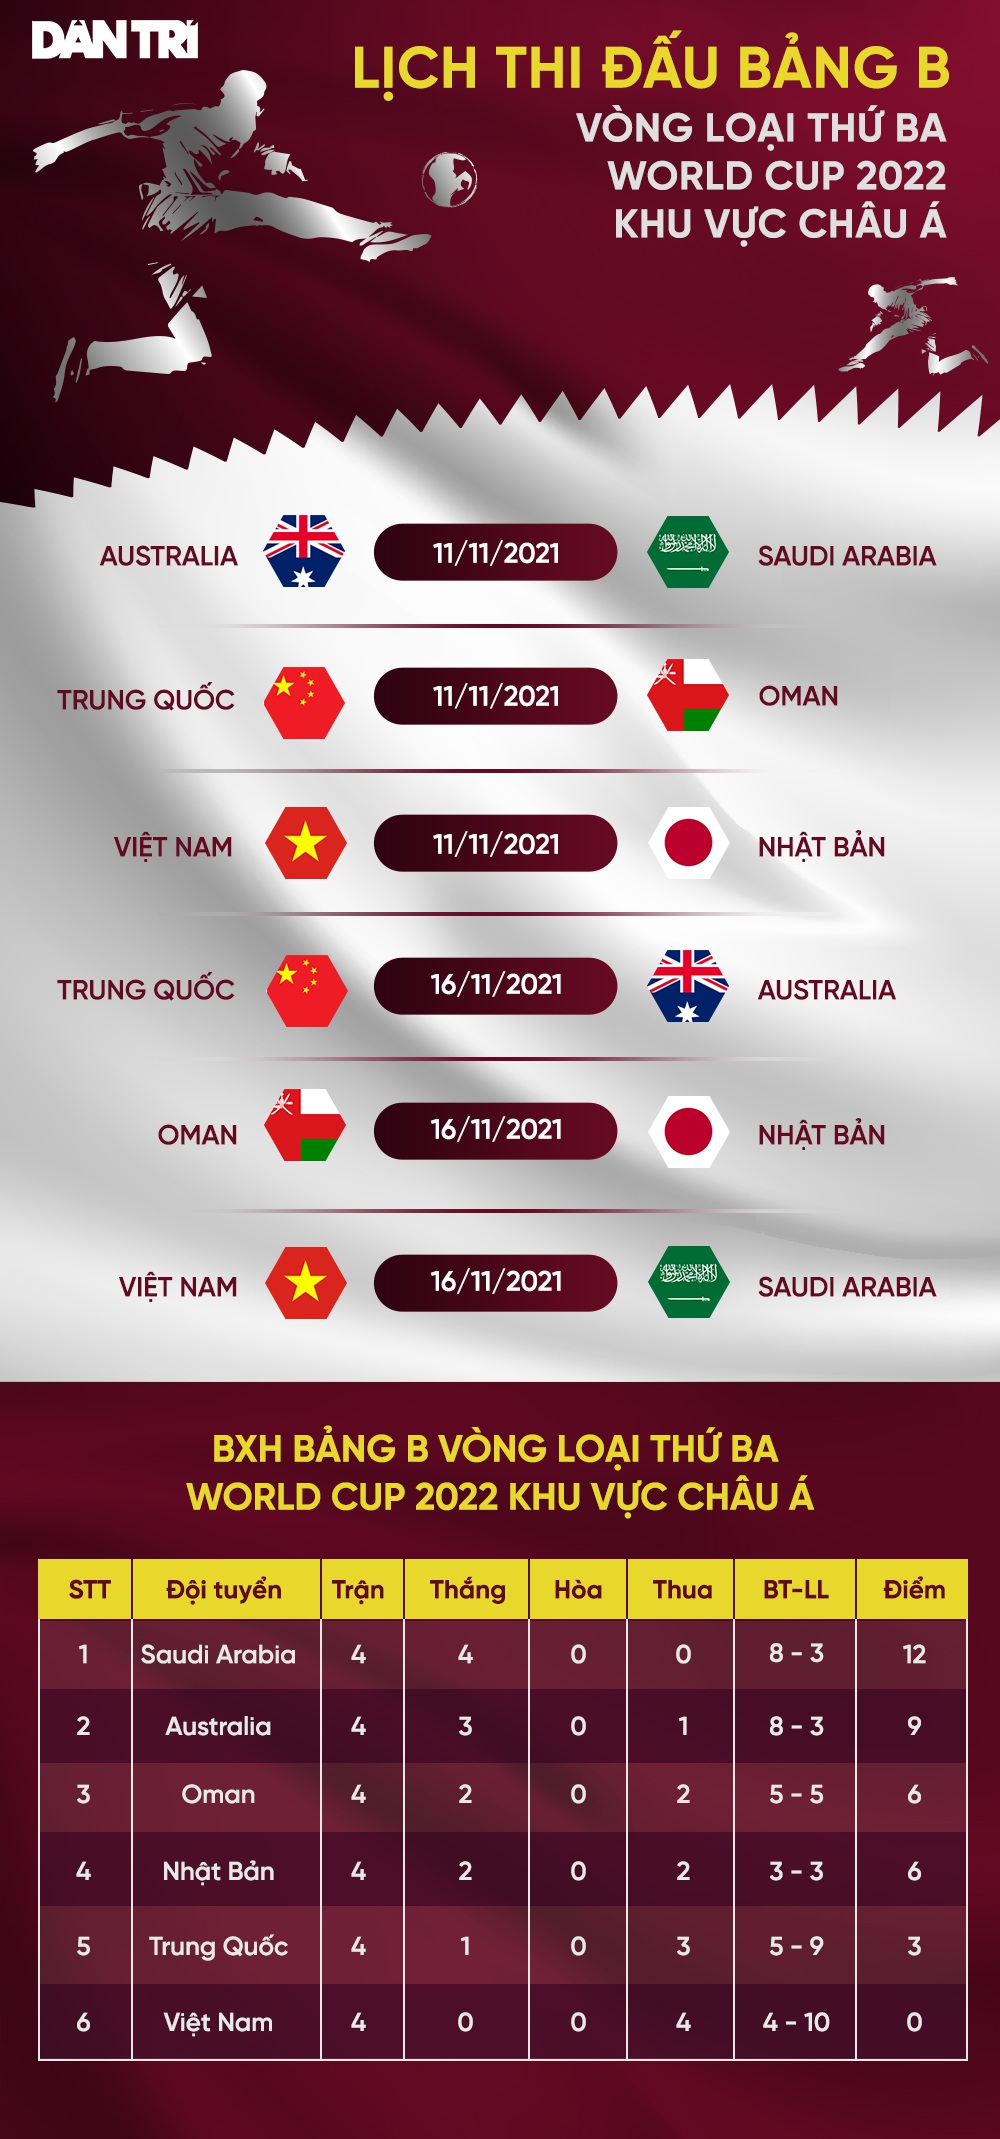 Vé trận đội tuyển Việt Nam - Nhật Bản giá cao nhất 1,2 triệu đồng - Ảnh 4.